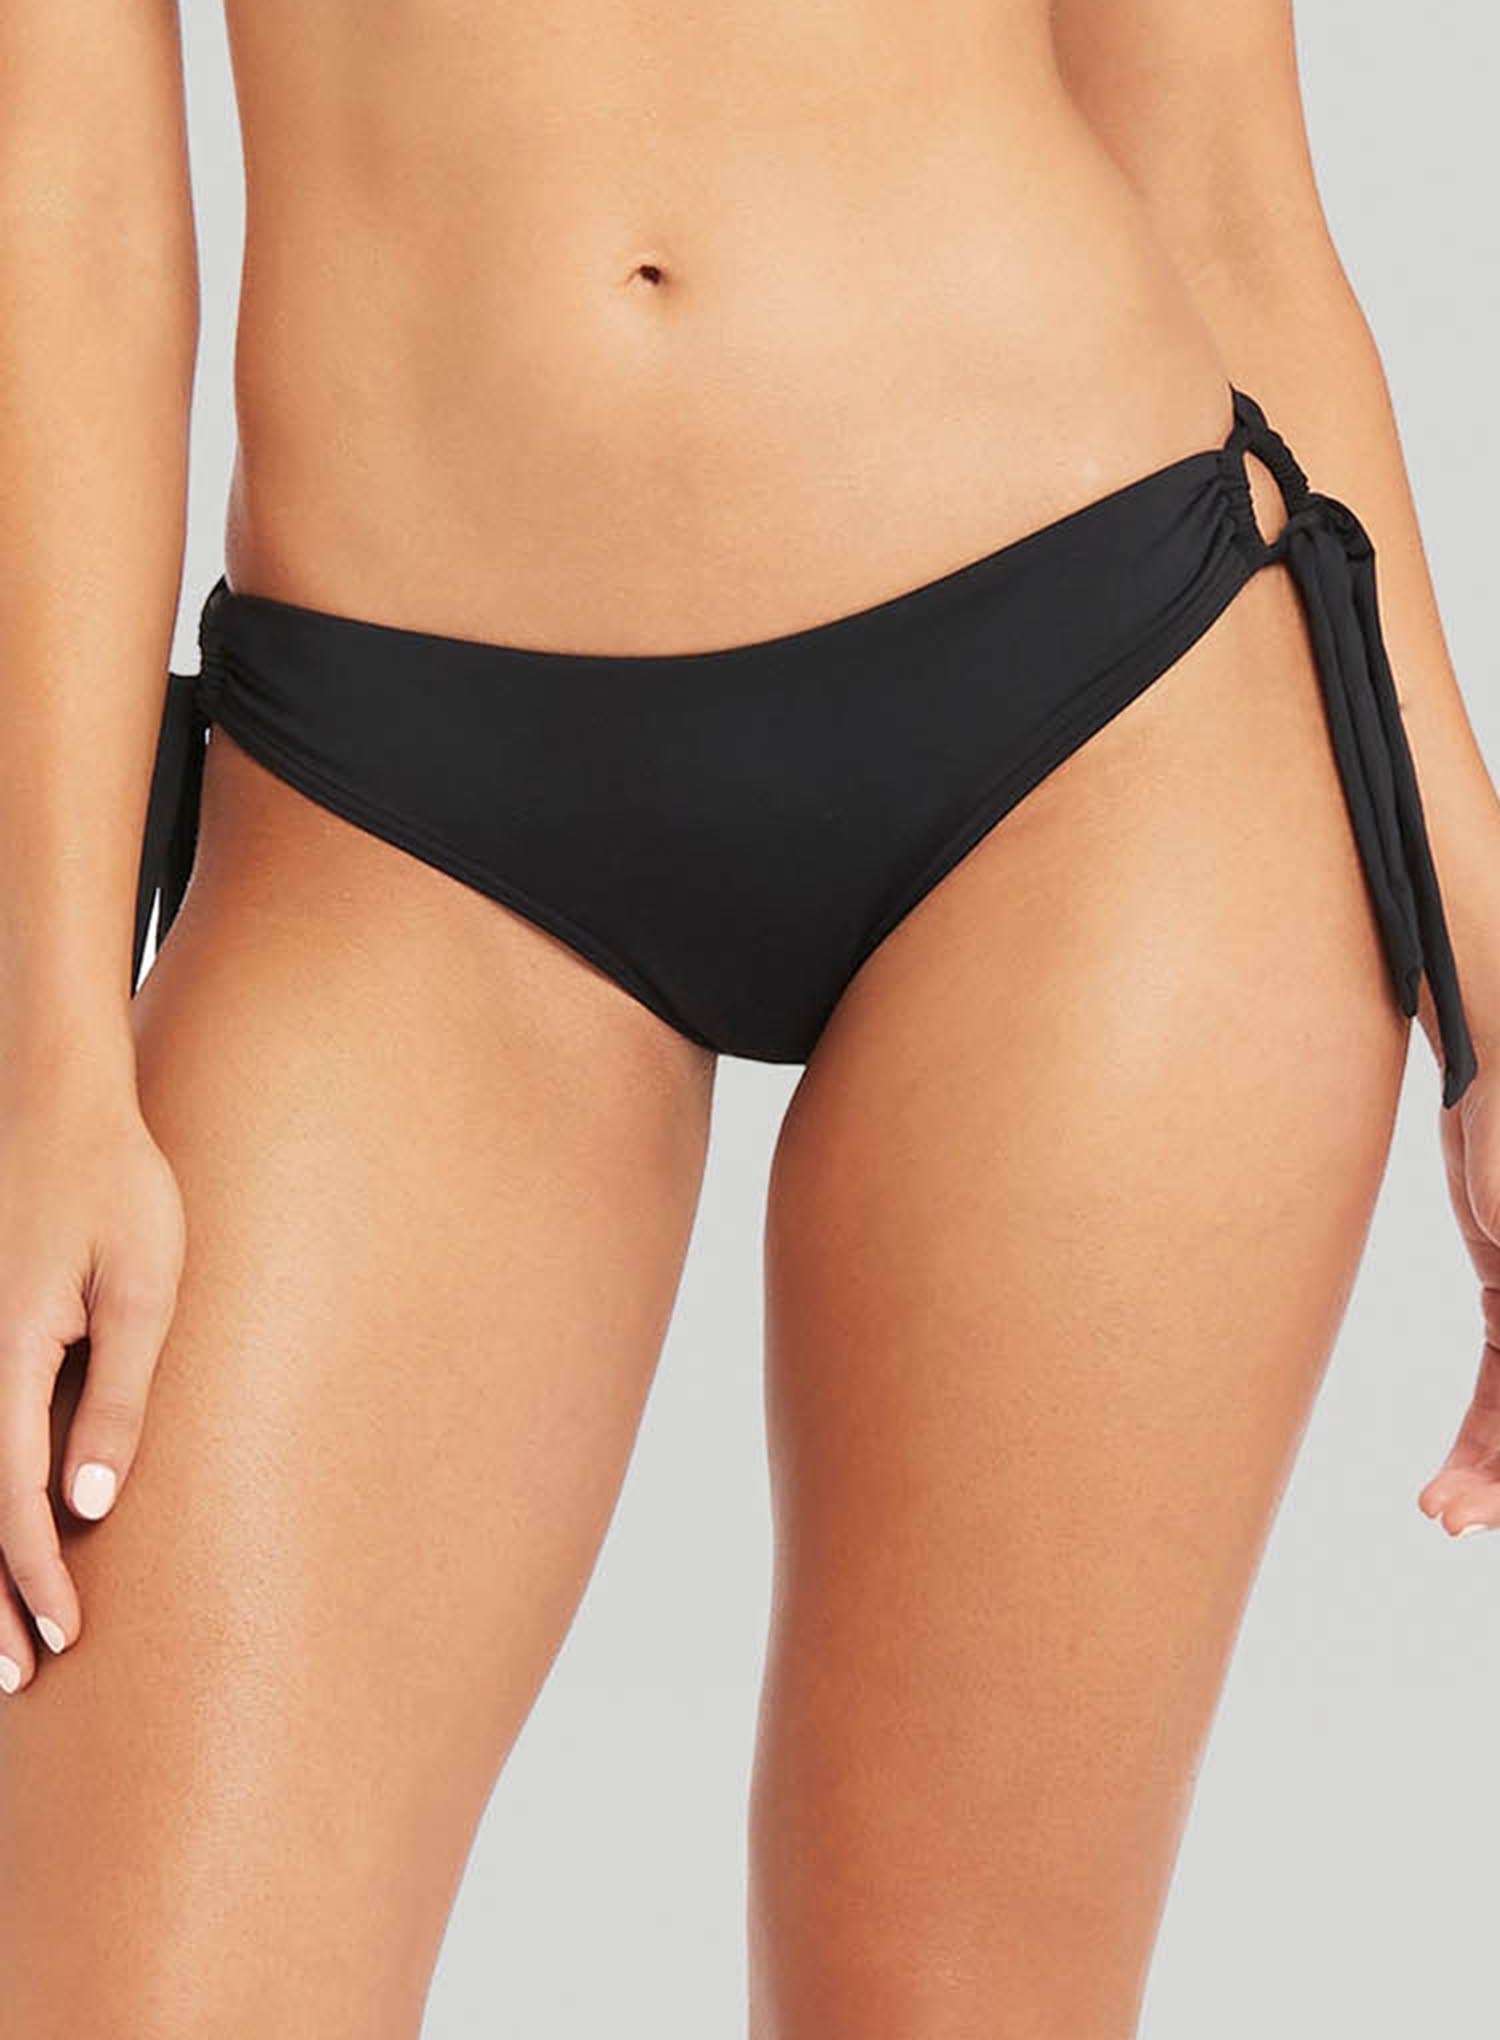 Sea Level Eco Essentials F/G-Cup Cross Front Bikini – Black (Style